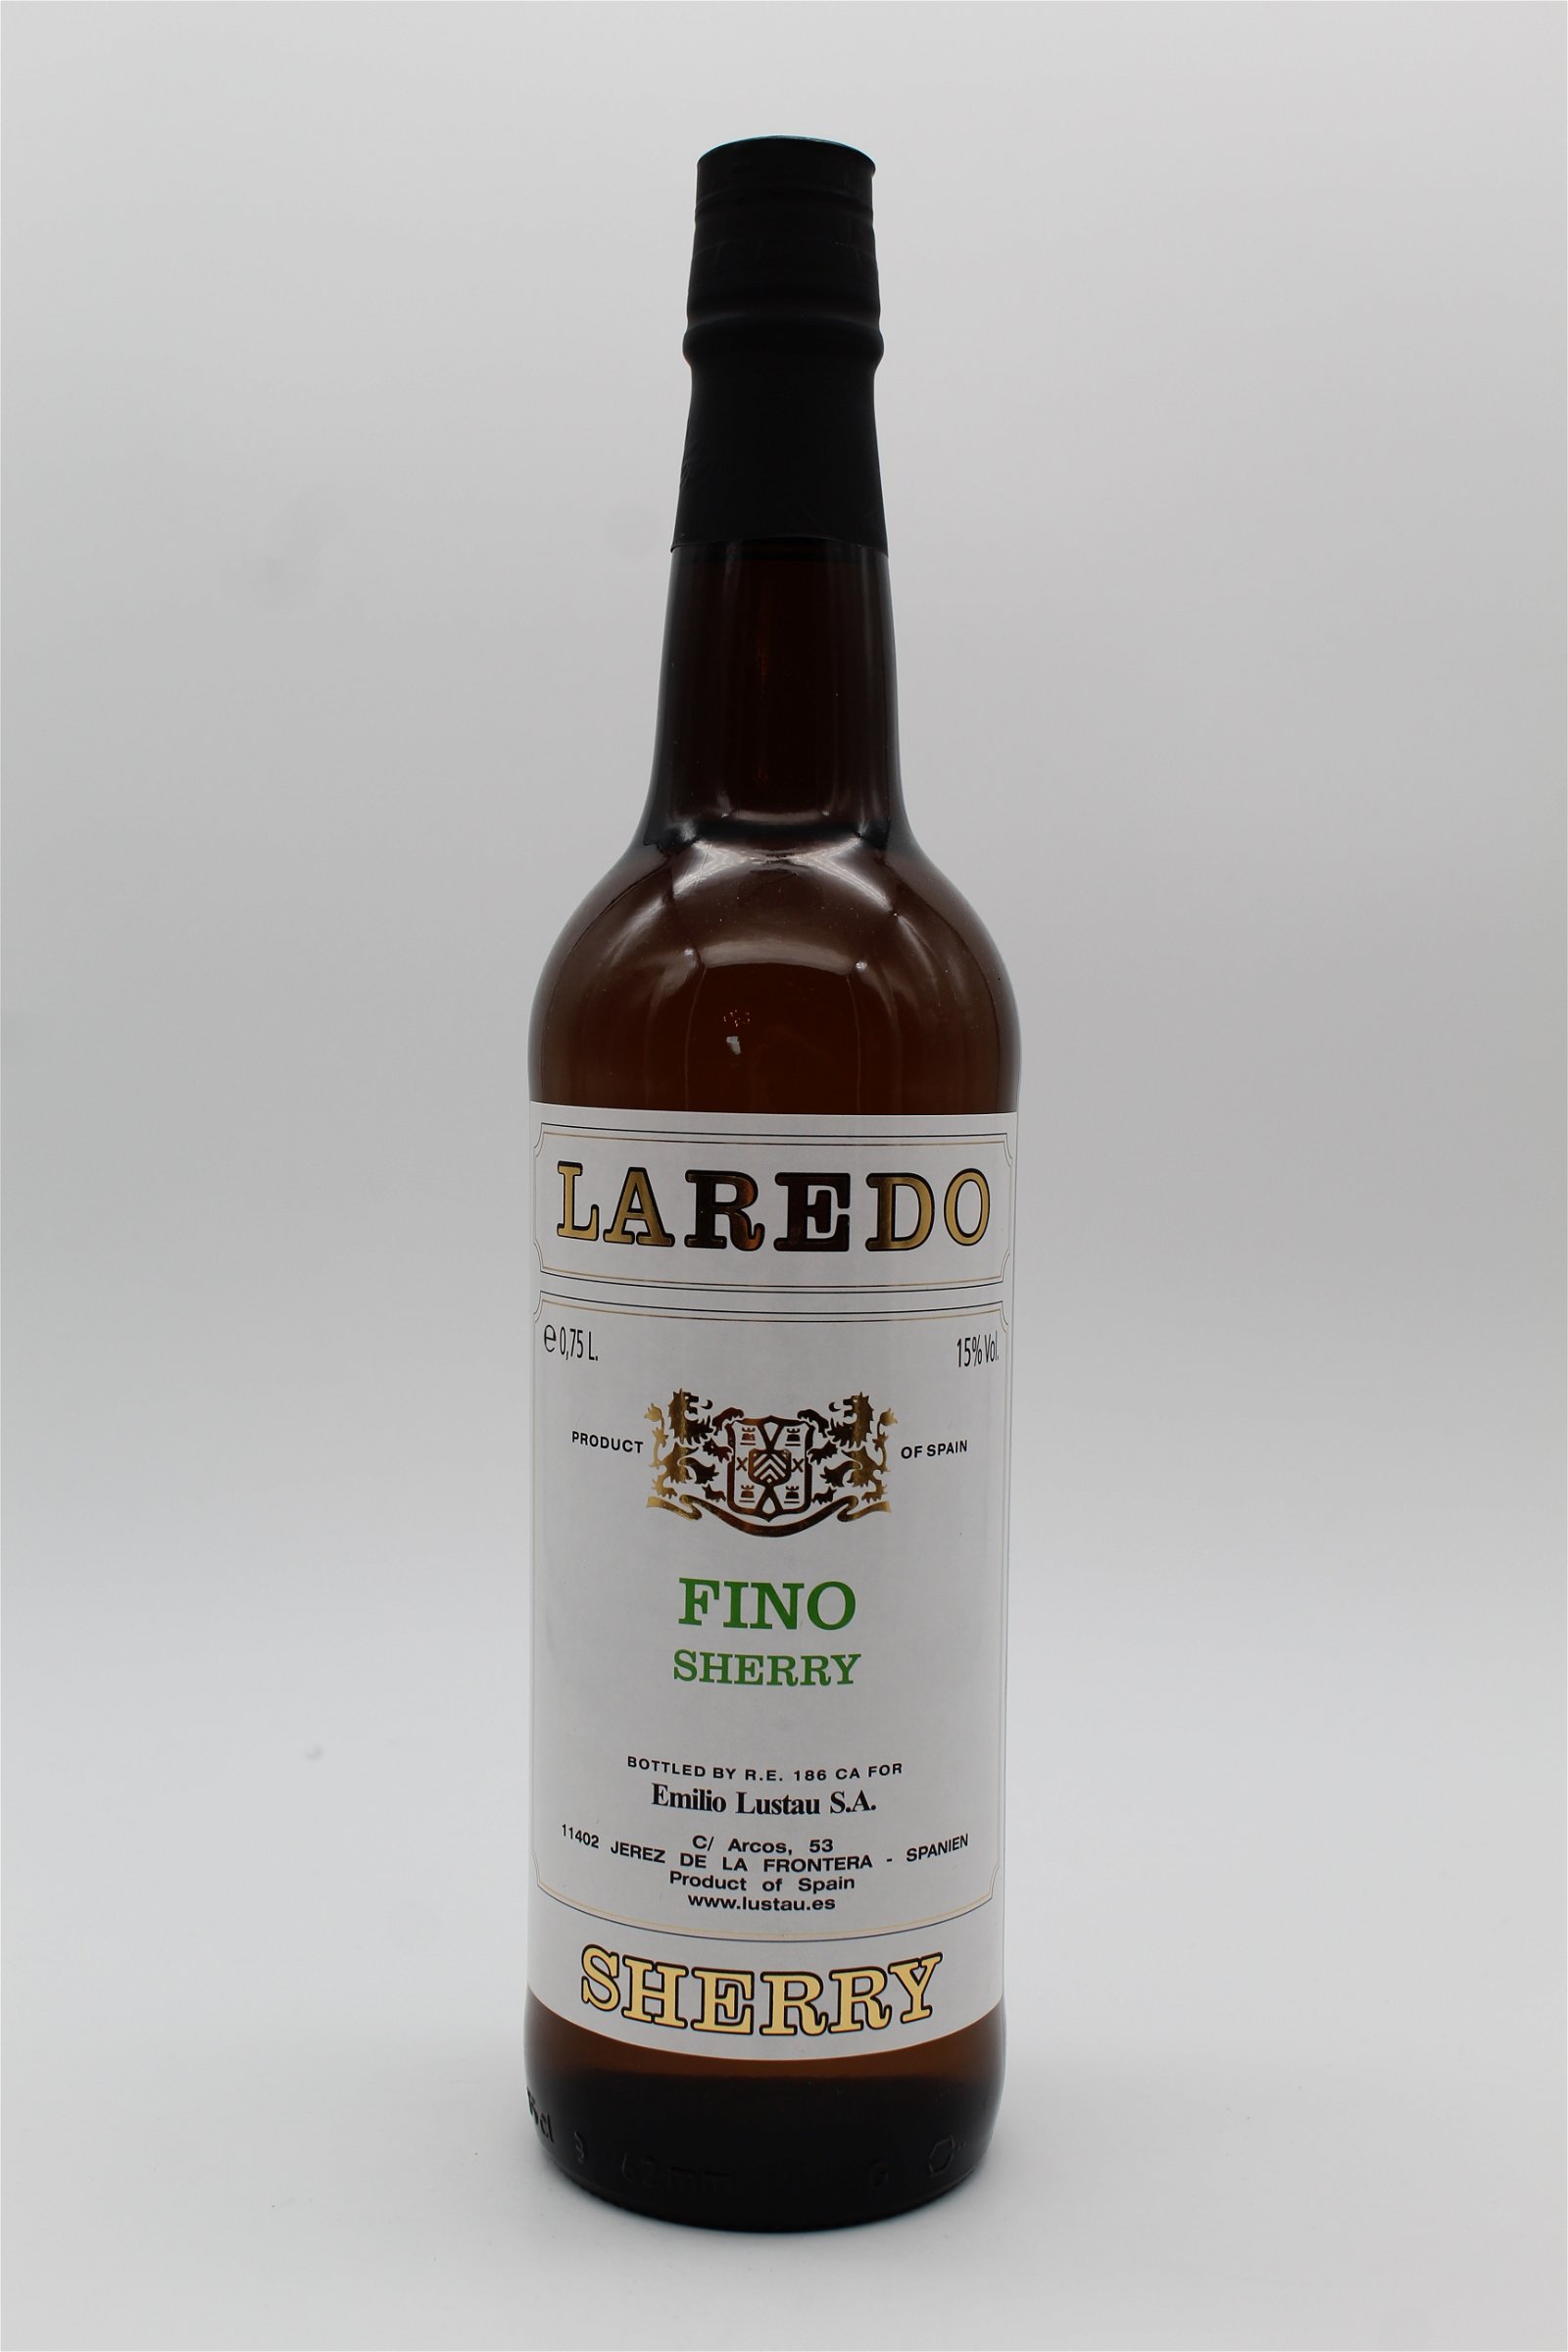 Laredo Fino Sherry